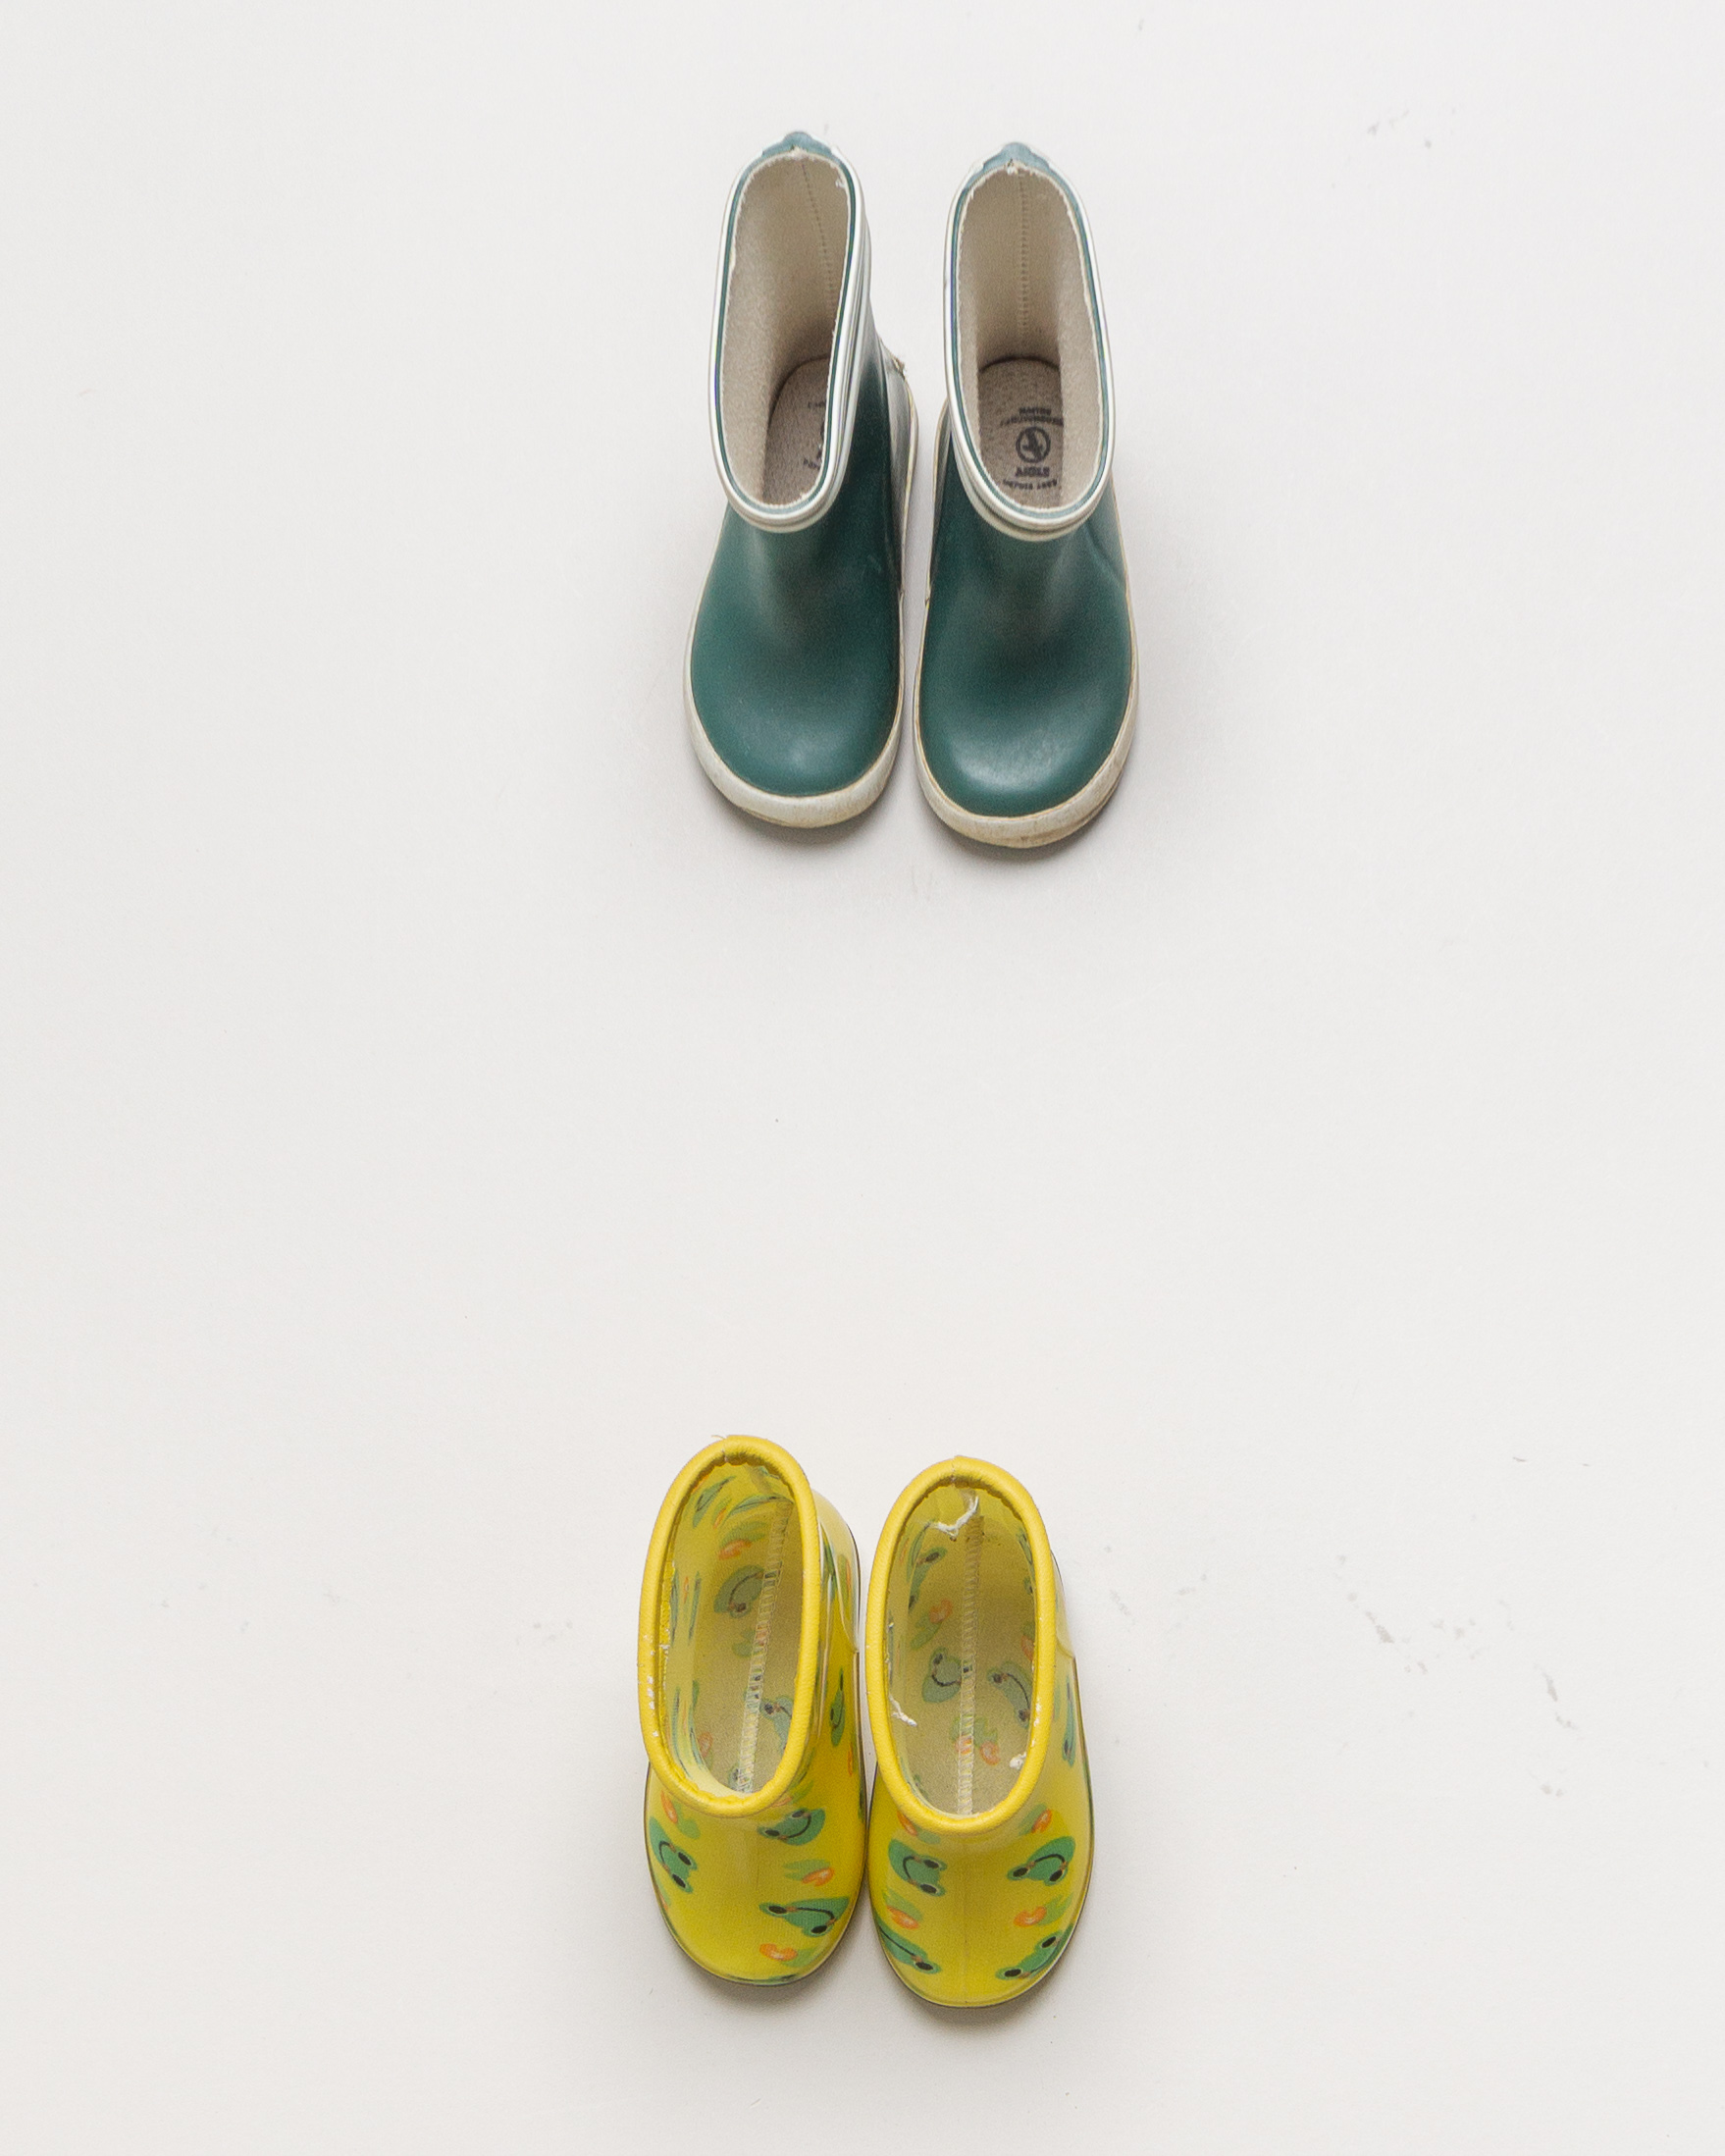 1 Paar Schuhe Gr. 21 – Aigle Gummistiefel Regen Matsch Gelb Grün Frosch Tiere